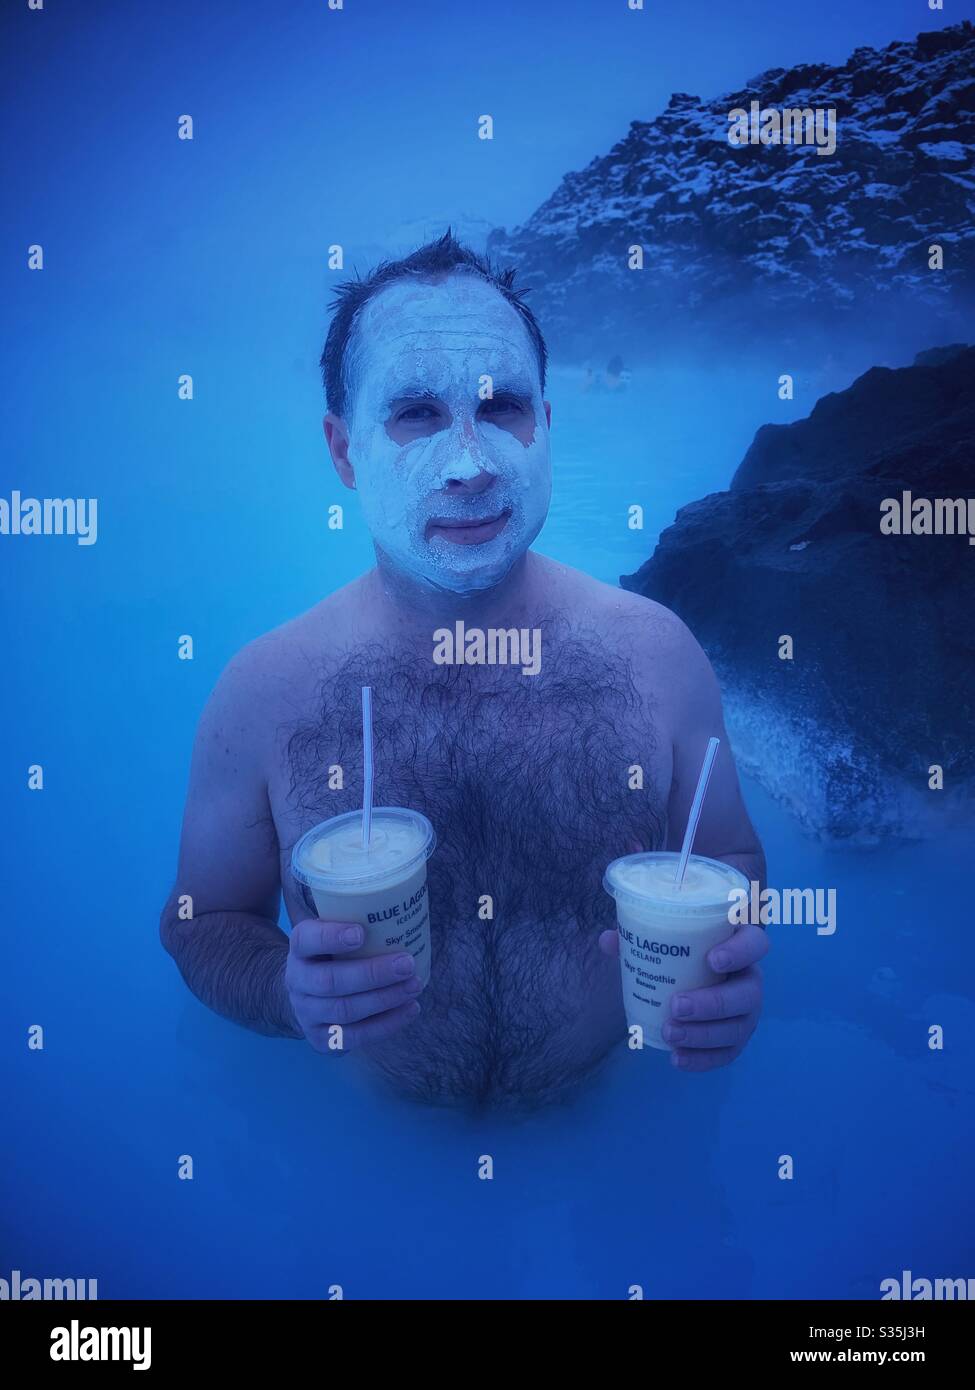 Mann, der in einem geothermischen Pool an der Blauen Lagune in Island steht, während er eine Kieselsäure-Gesichtsmaske trägt und zwei Bananenmilchshakes hält. Umgeben von milchig blauem Wasser und vulkanischem Gestein. Stockfoto